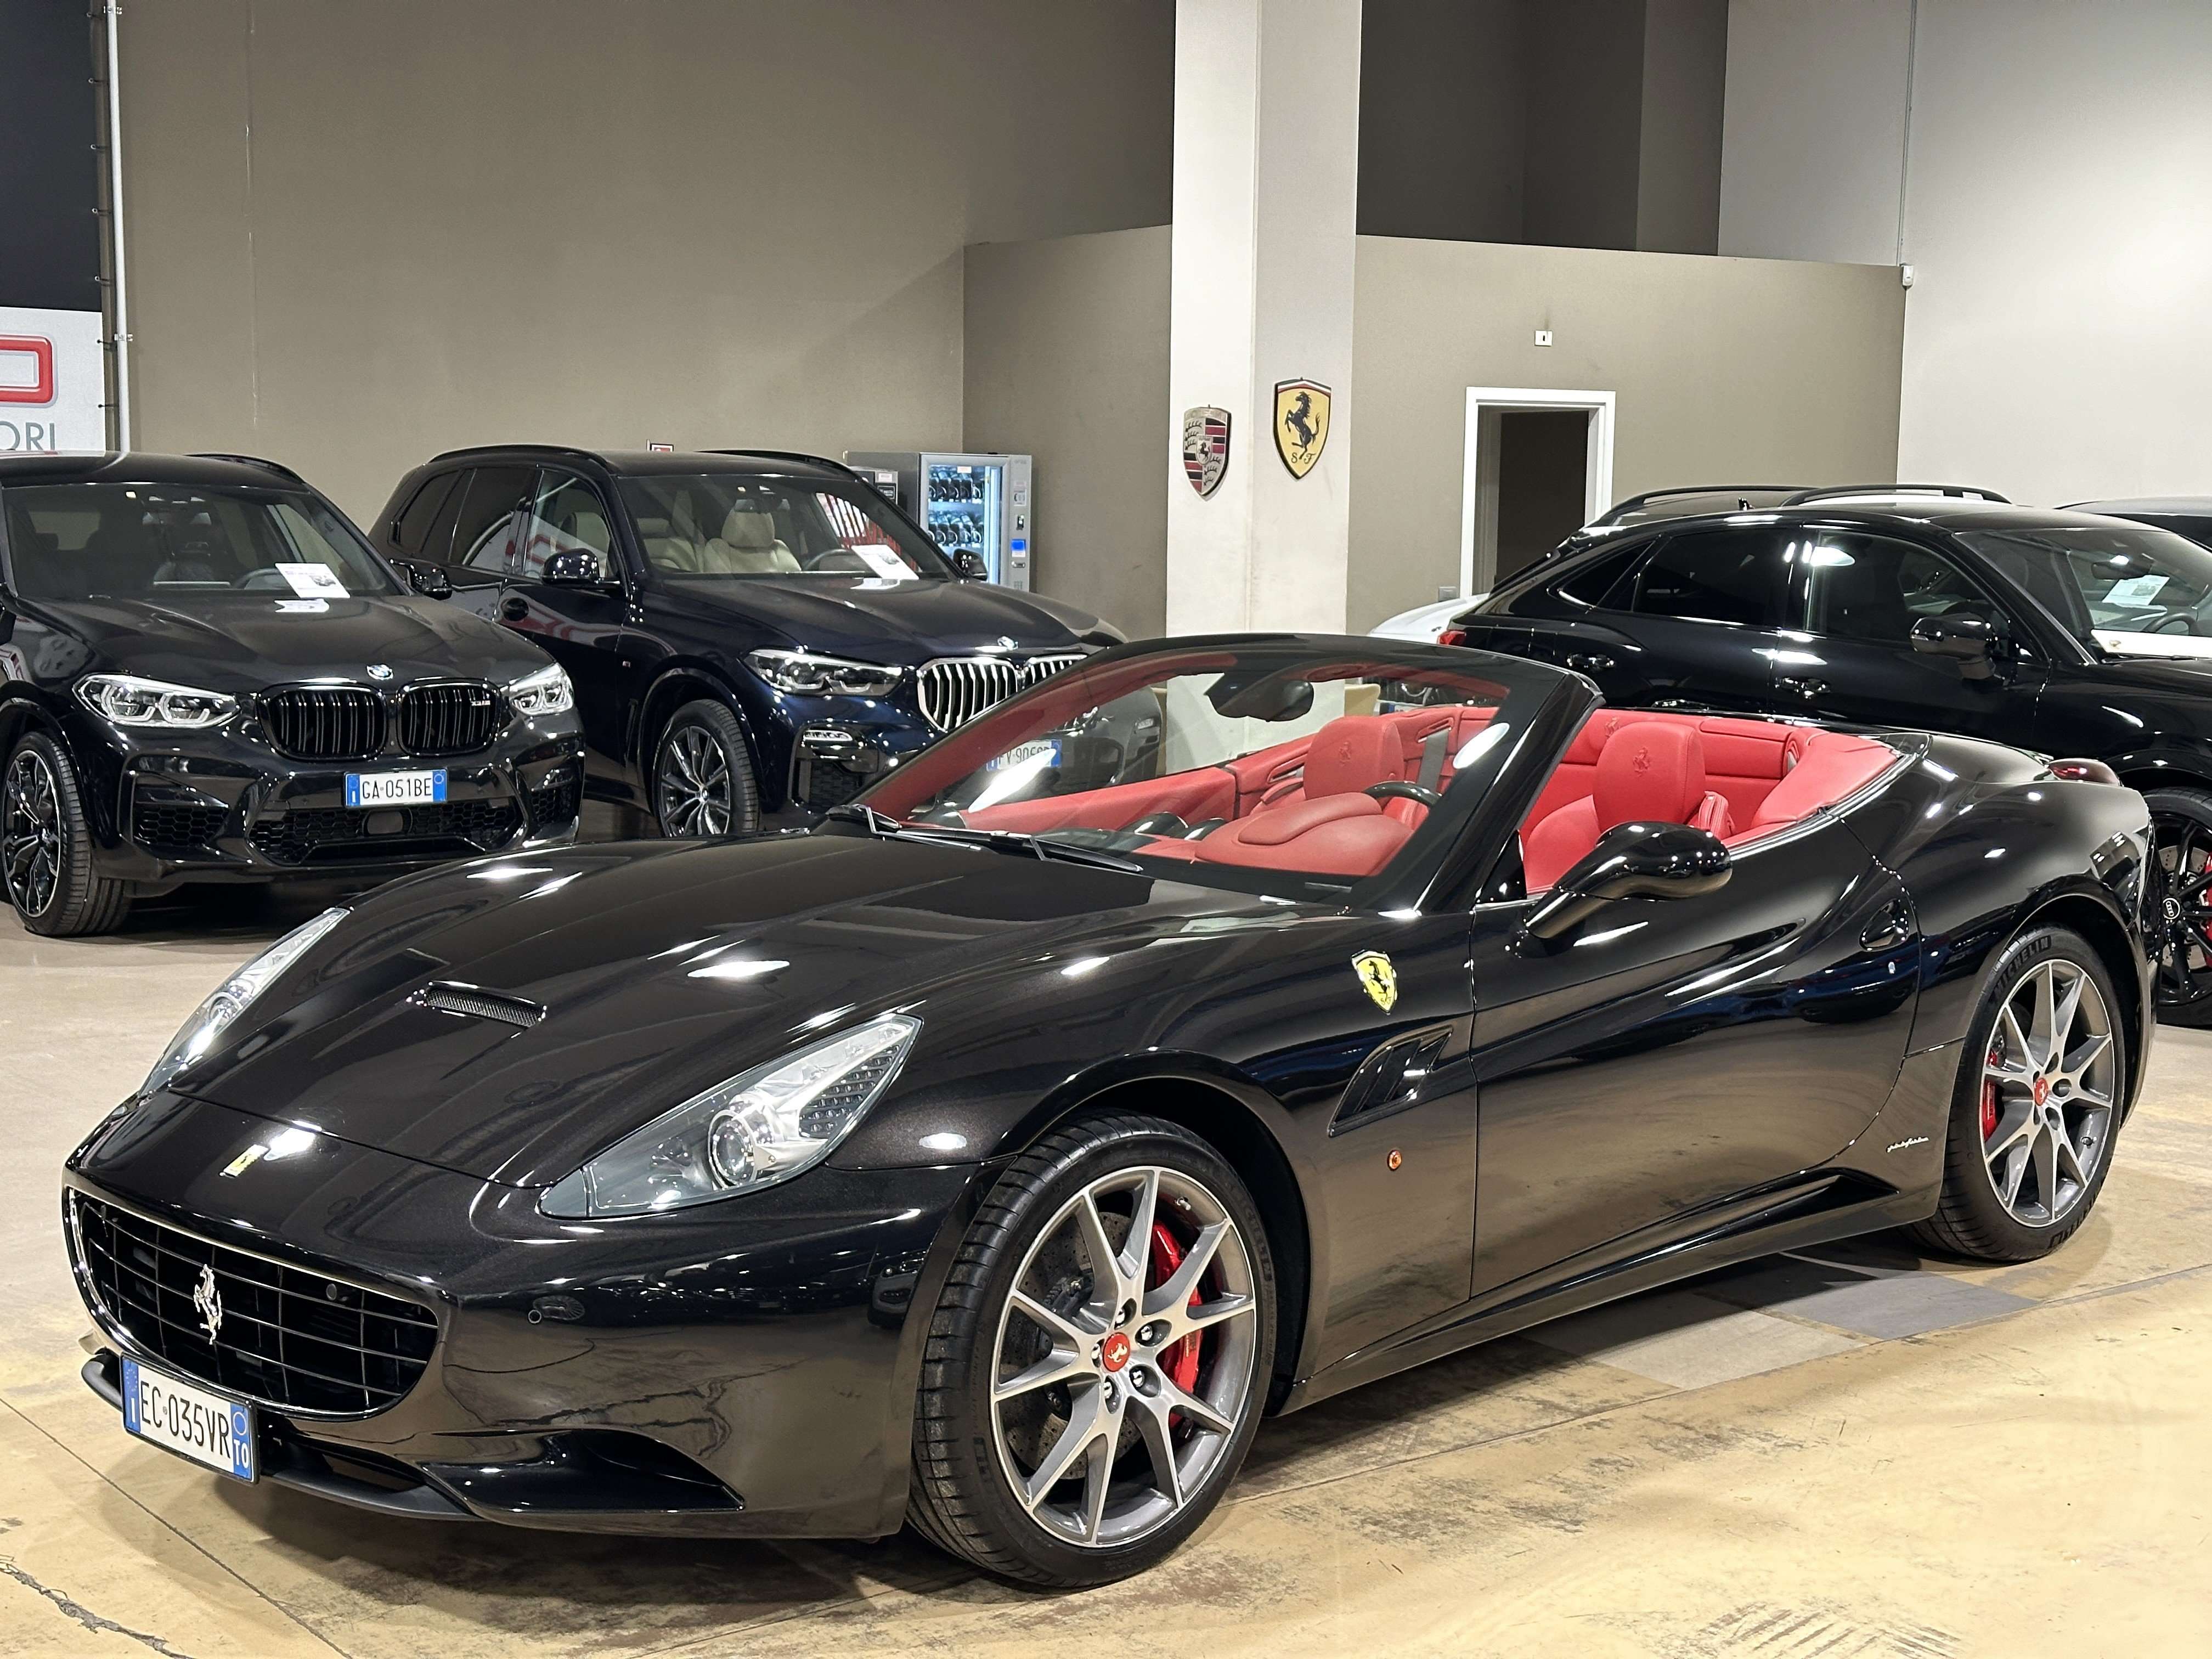 Ferrari California Convertible in Black used in Paderno Dugnano – Milano – Mi for € 128,000.-